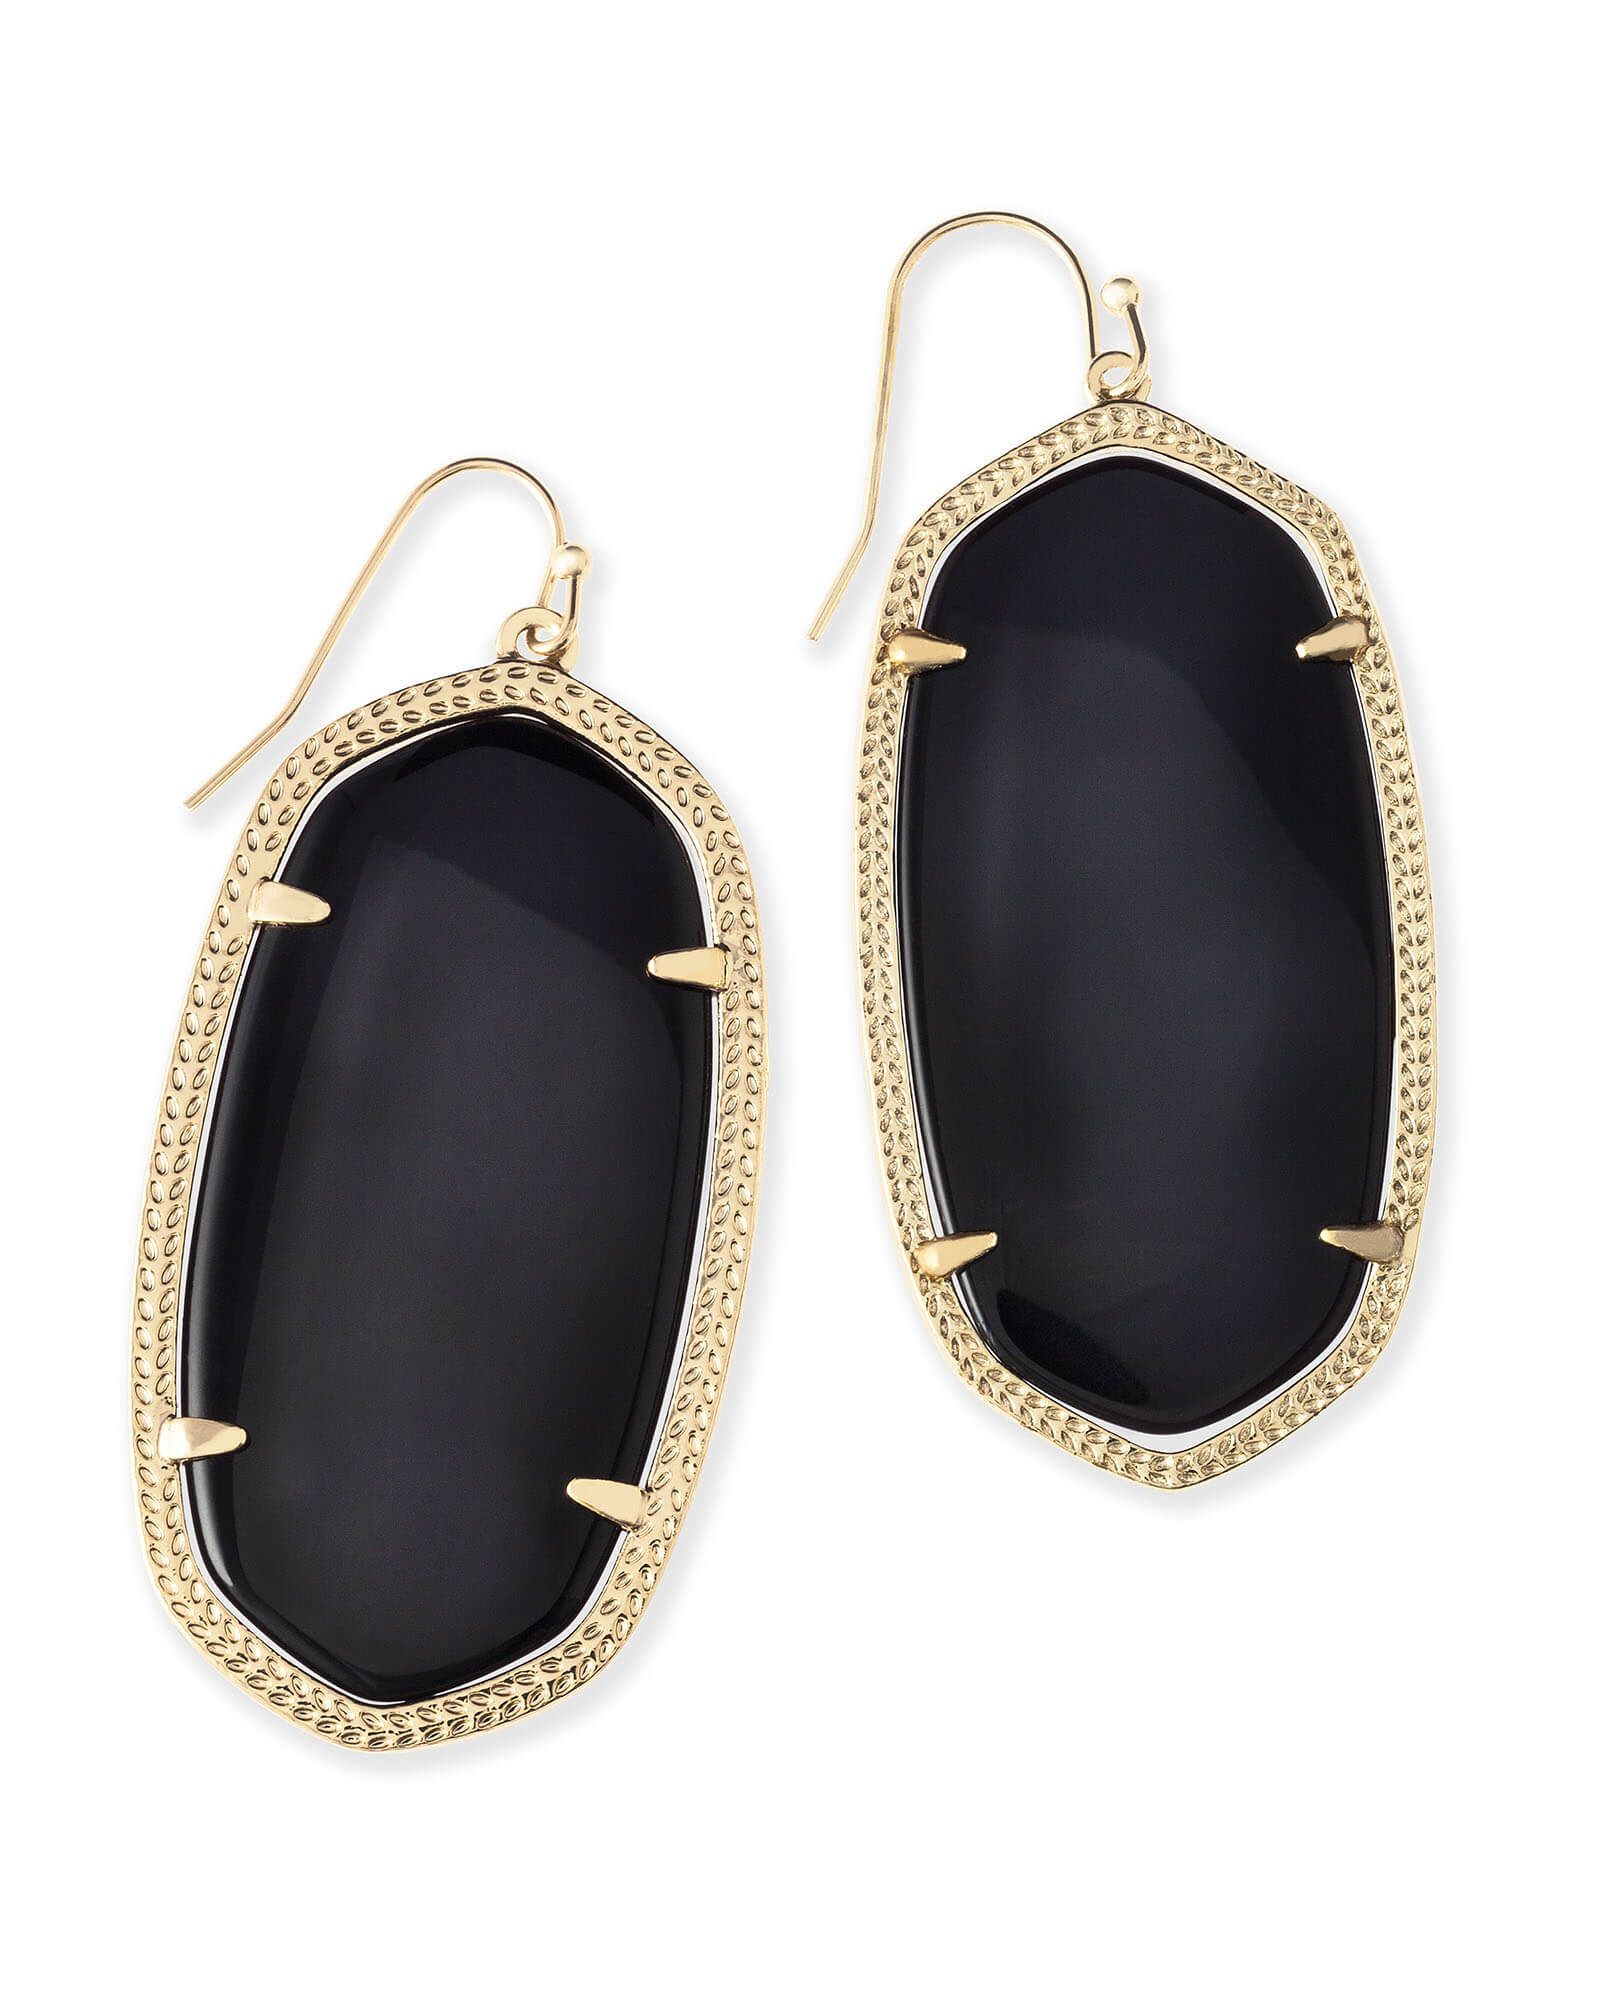 Danielle Gold Drop Earrings in Black Opaque Glass | Kendra Scott